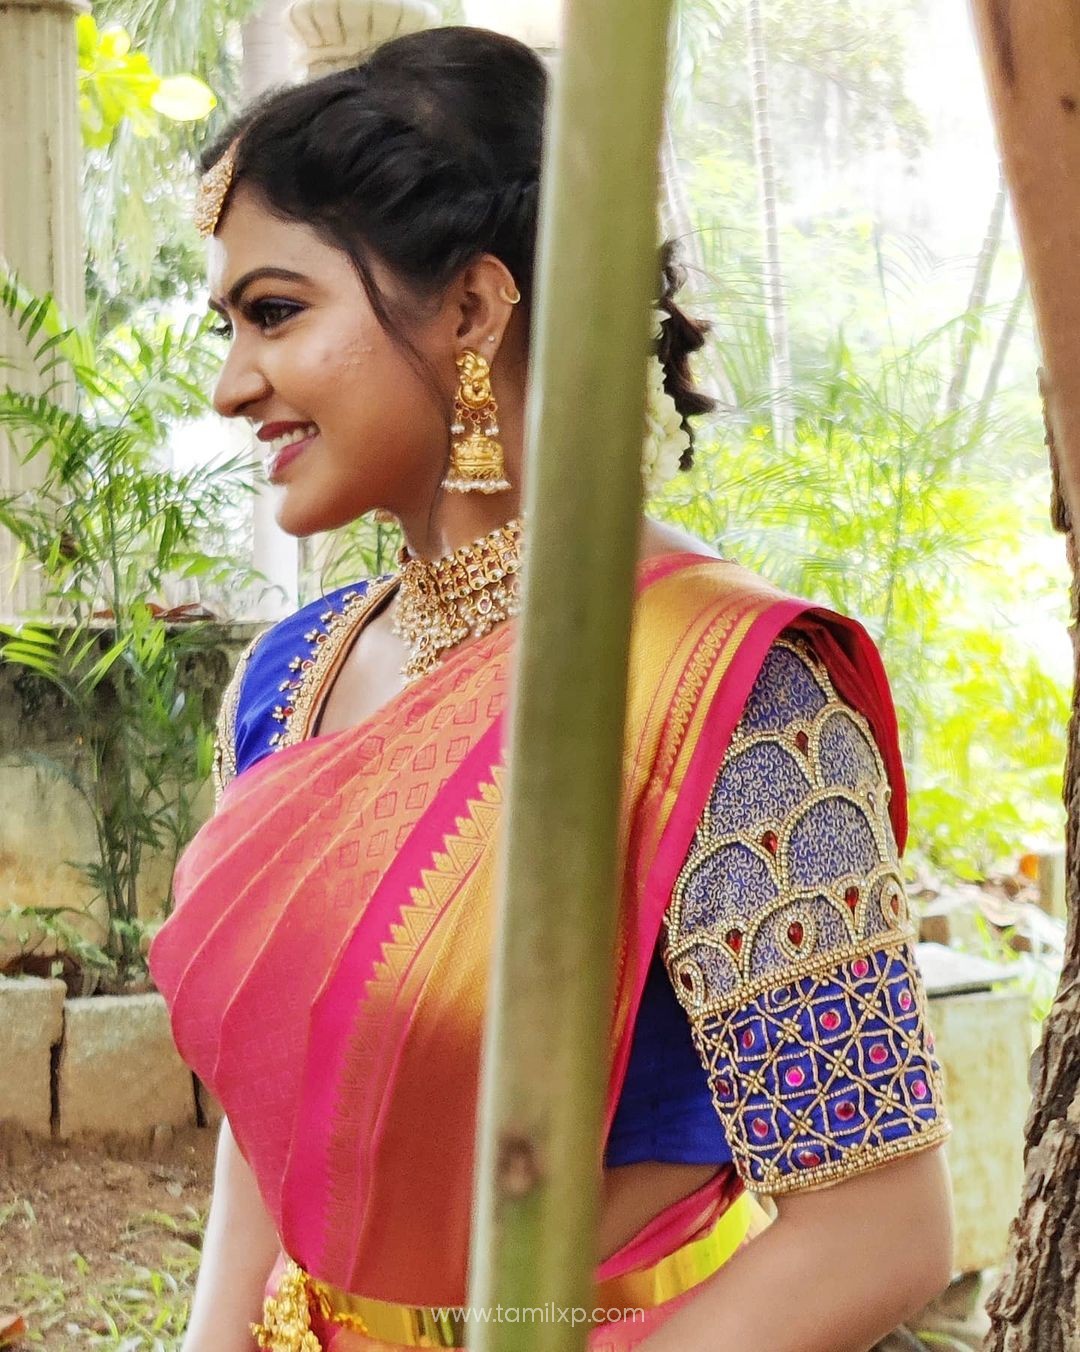 Actress Rachitha Mahalakshmi